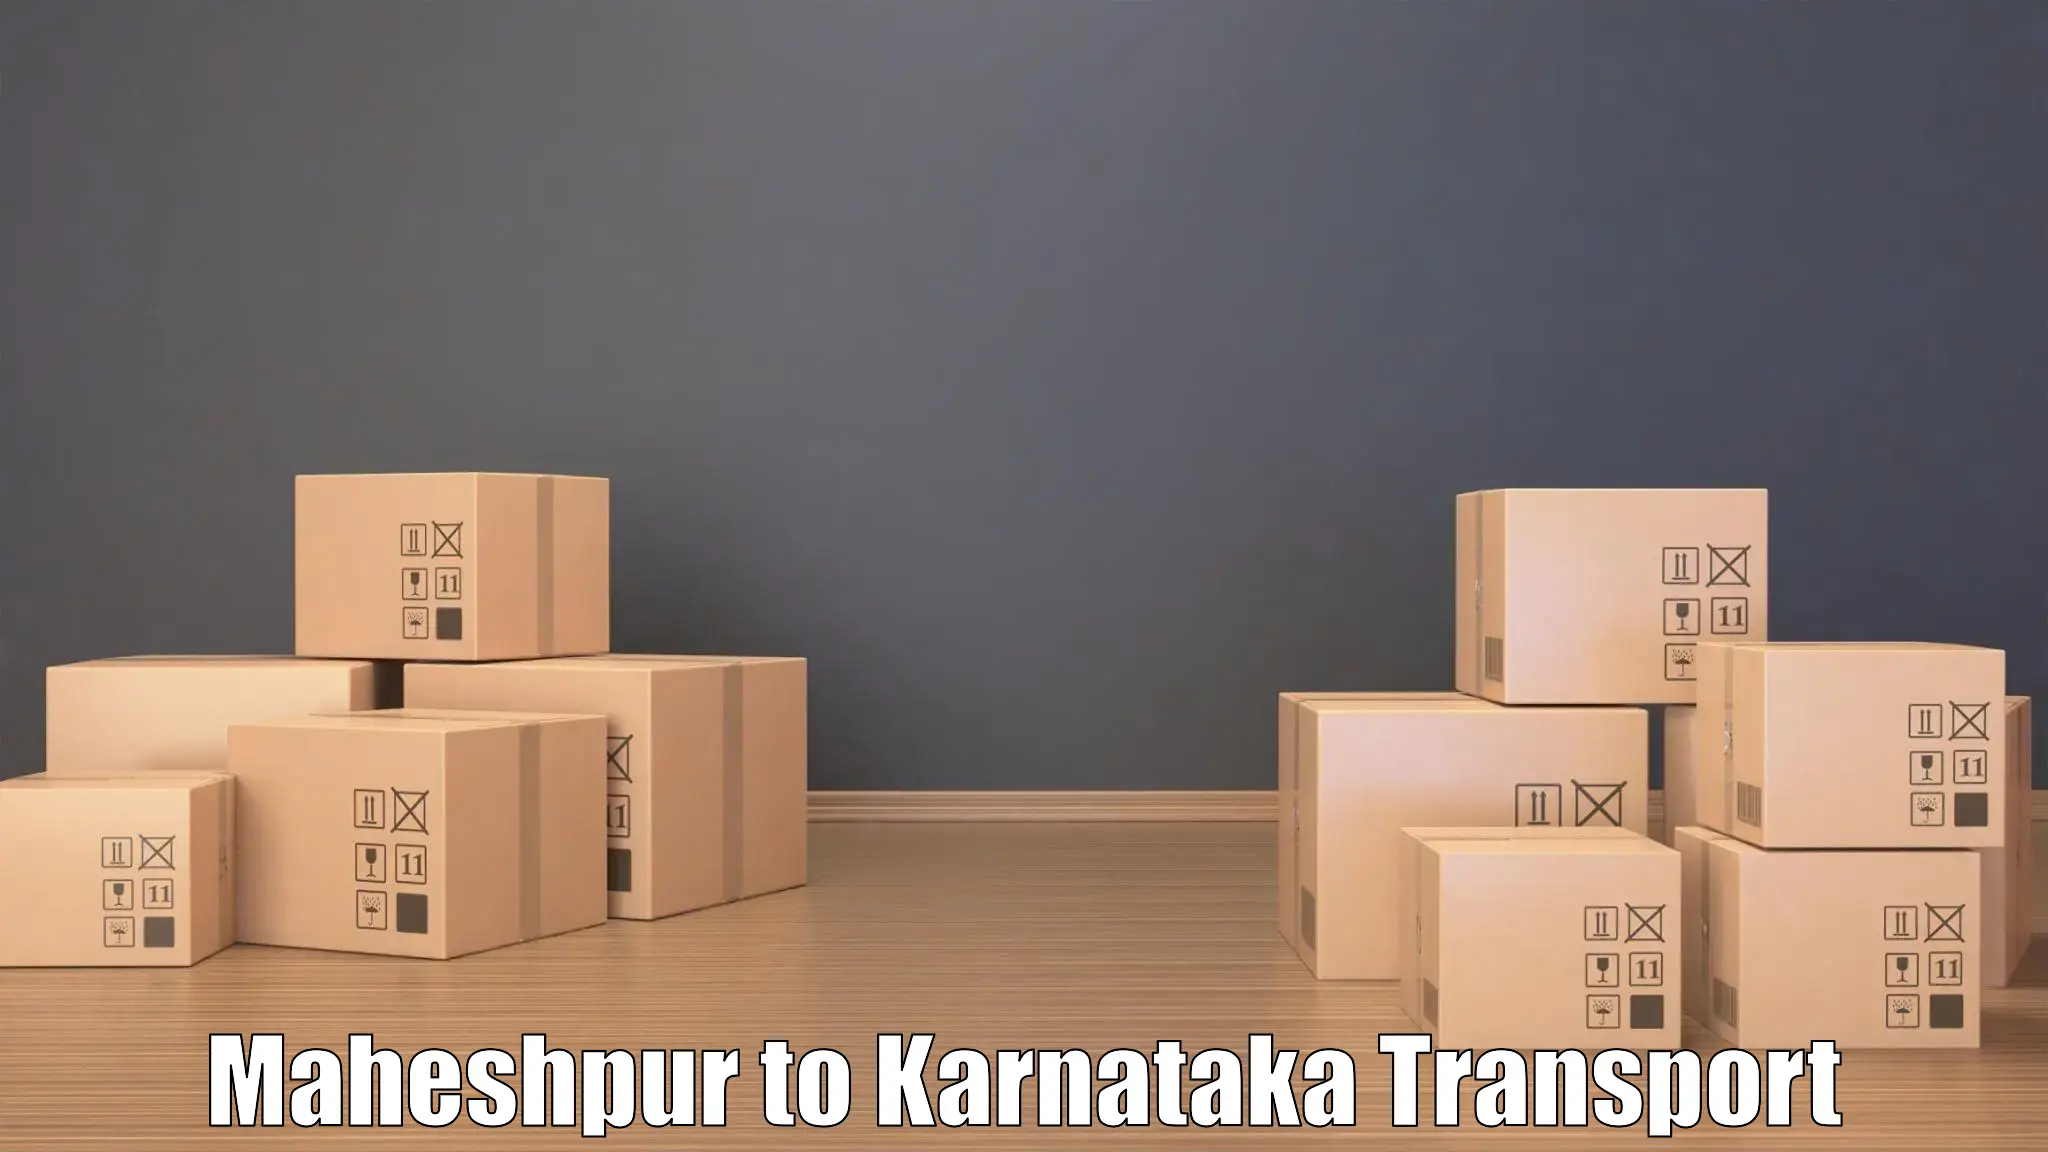 Pick up transport service Maheshpur to Rajajinagar